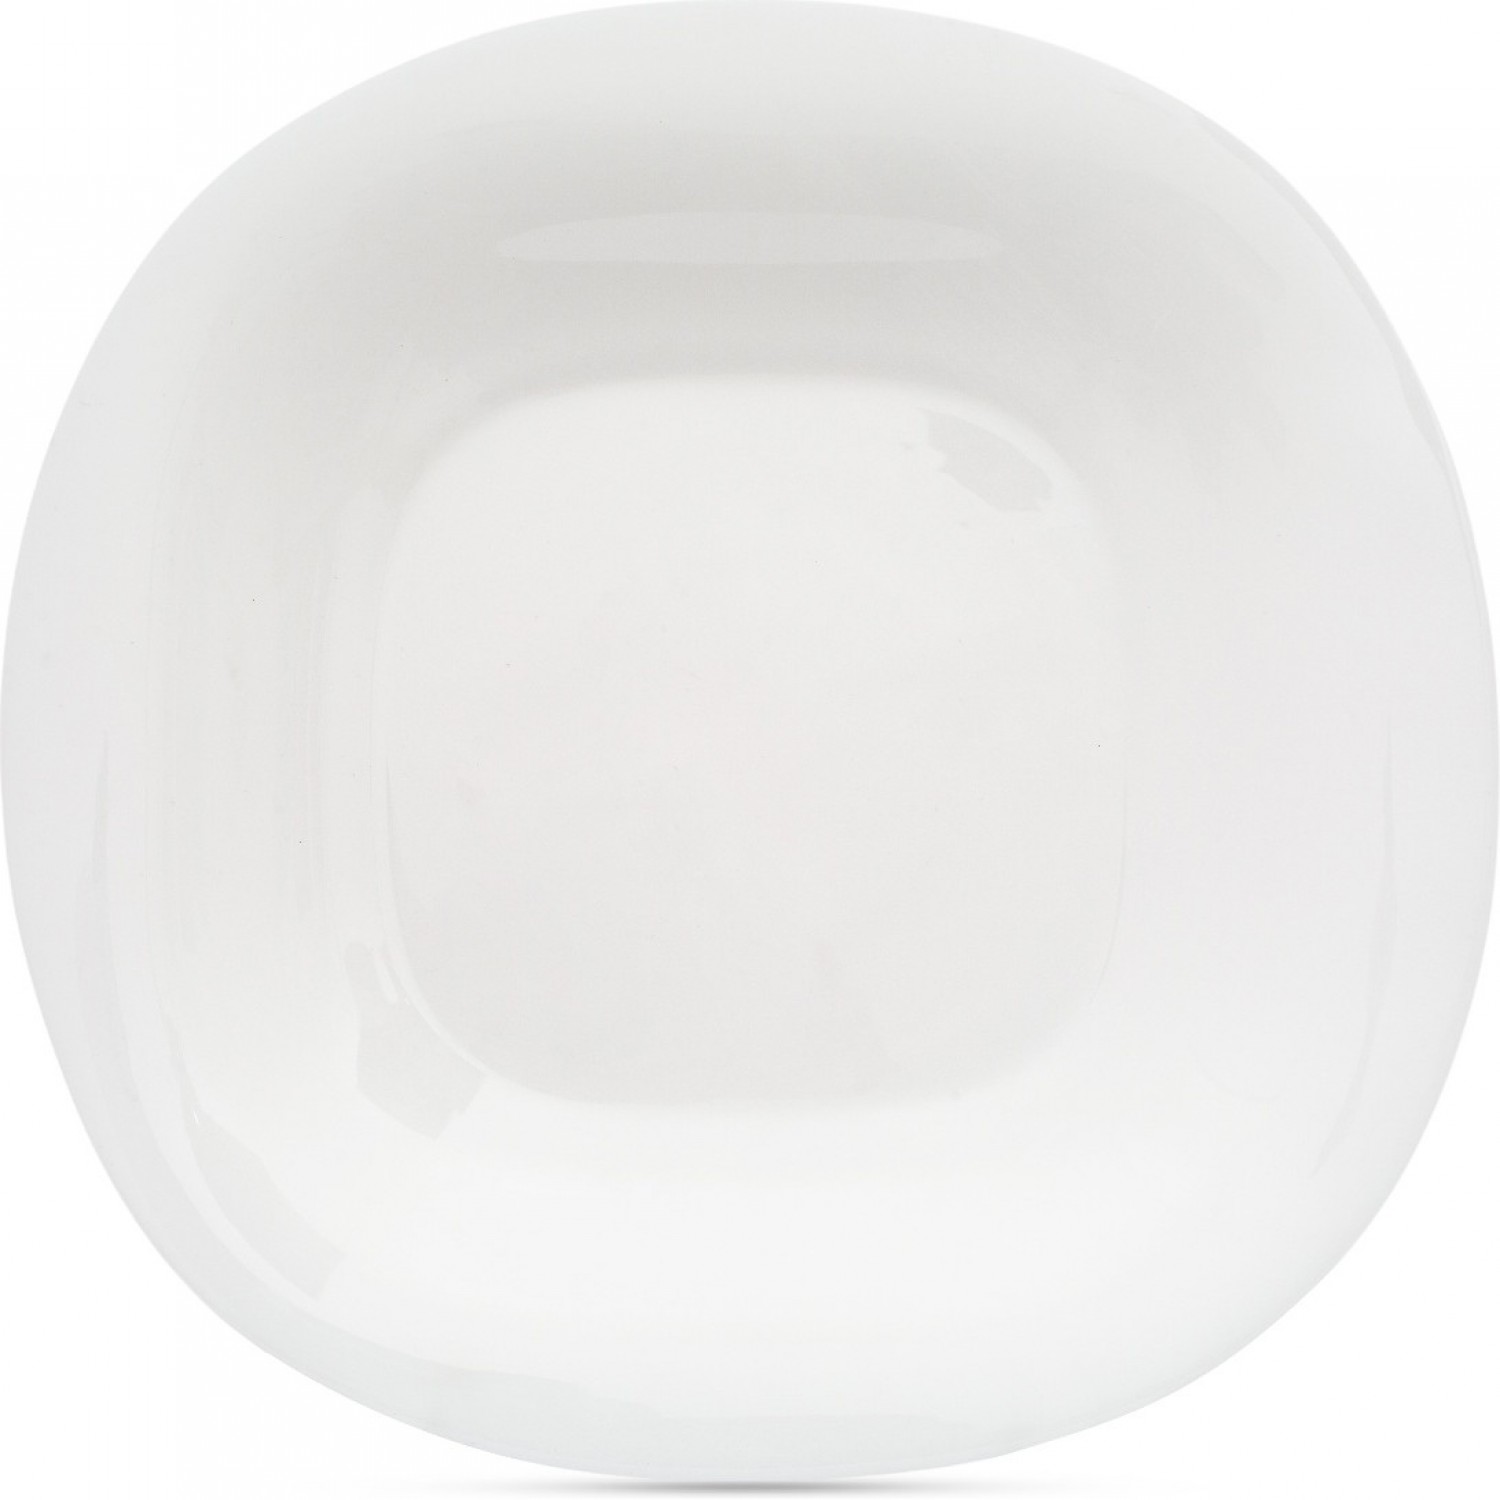 Тарелка обеденная КАРИН БЕЛЫЙ 26см LUMINARC N6804 тарелка обеденная карин белый 26см luminarc n6804